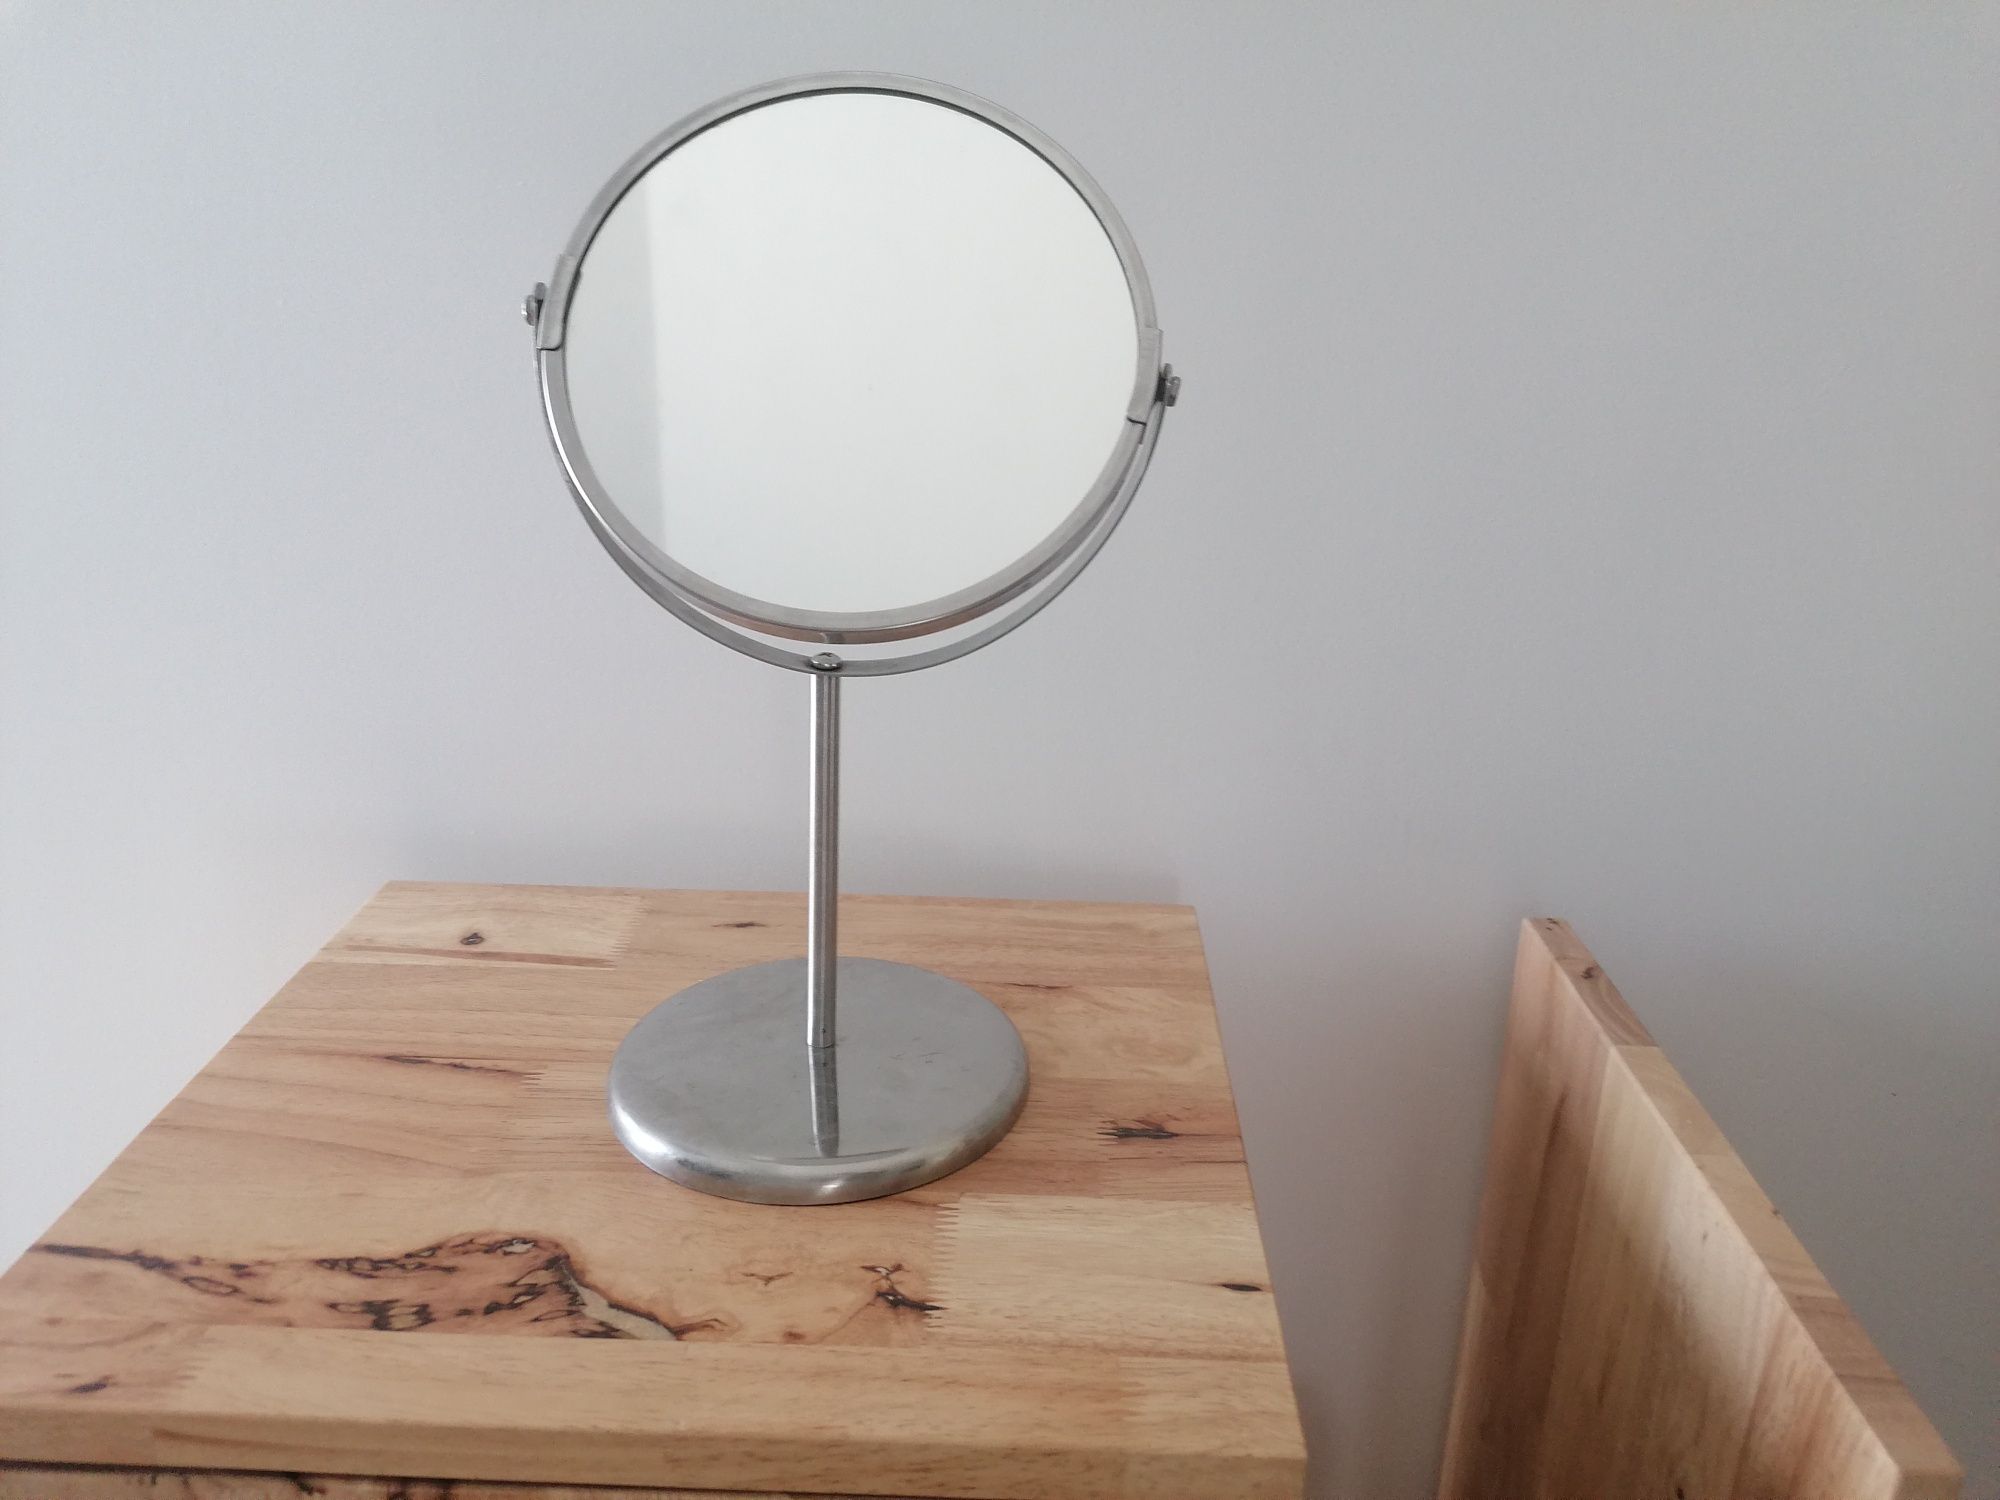 Espelho de mesa - 2 faces com zoom - aço inoxidável